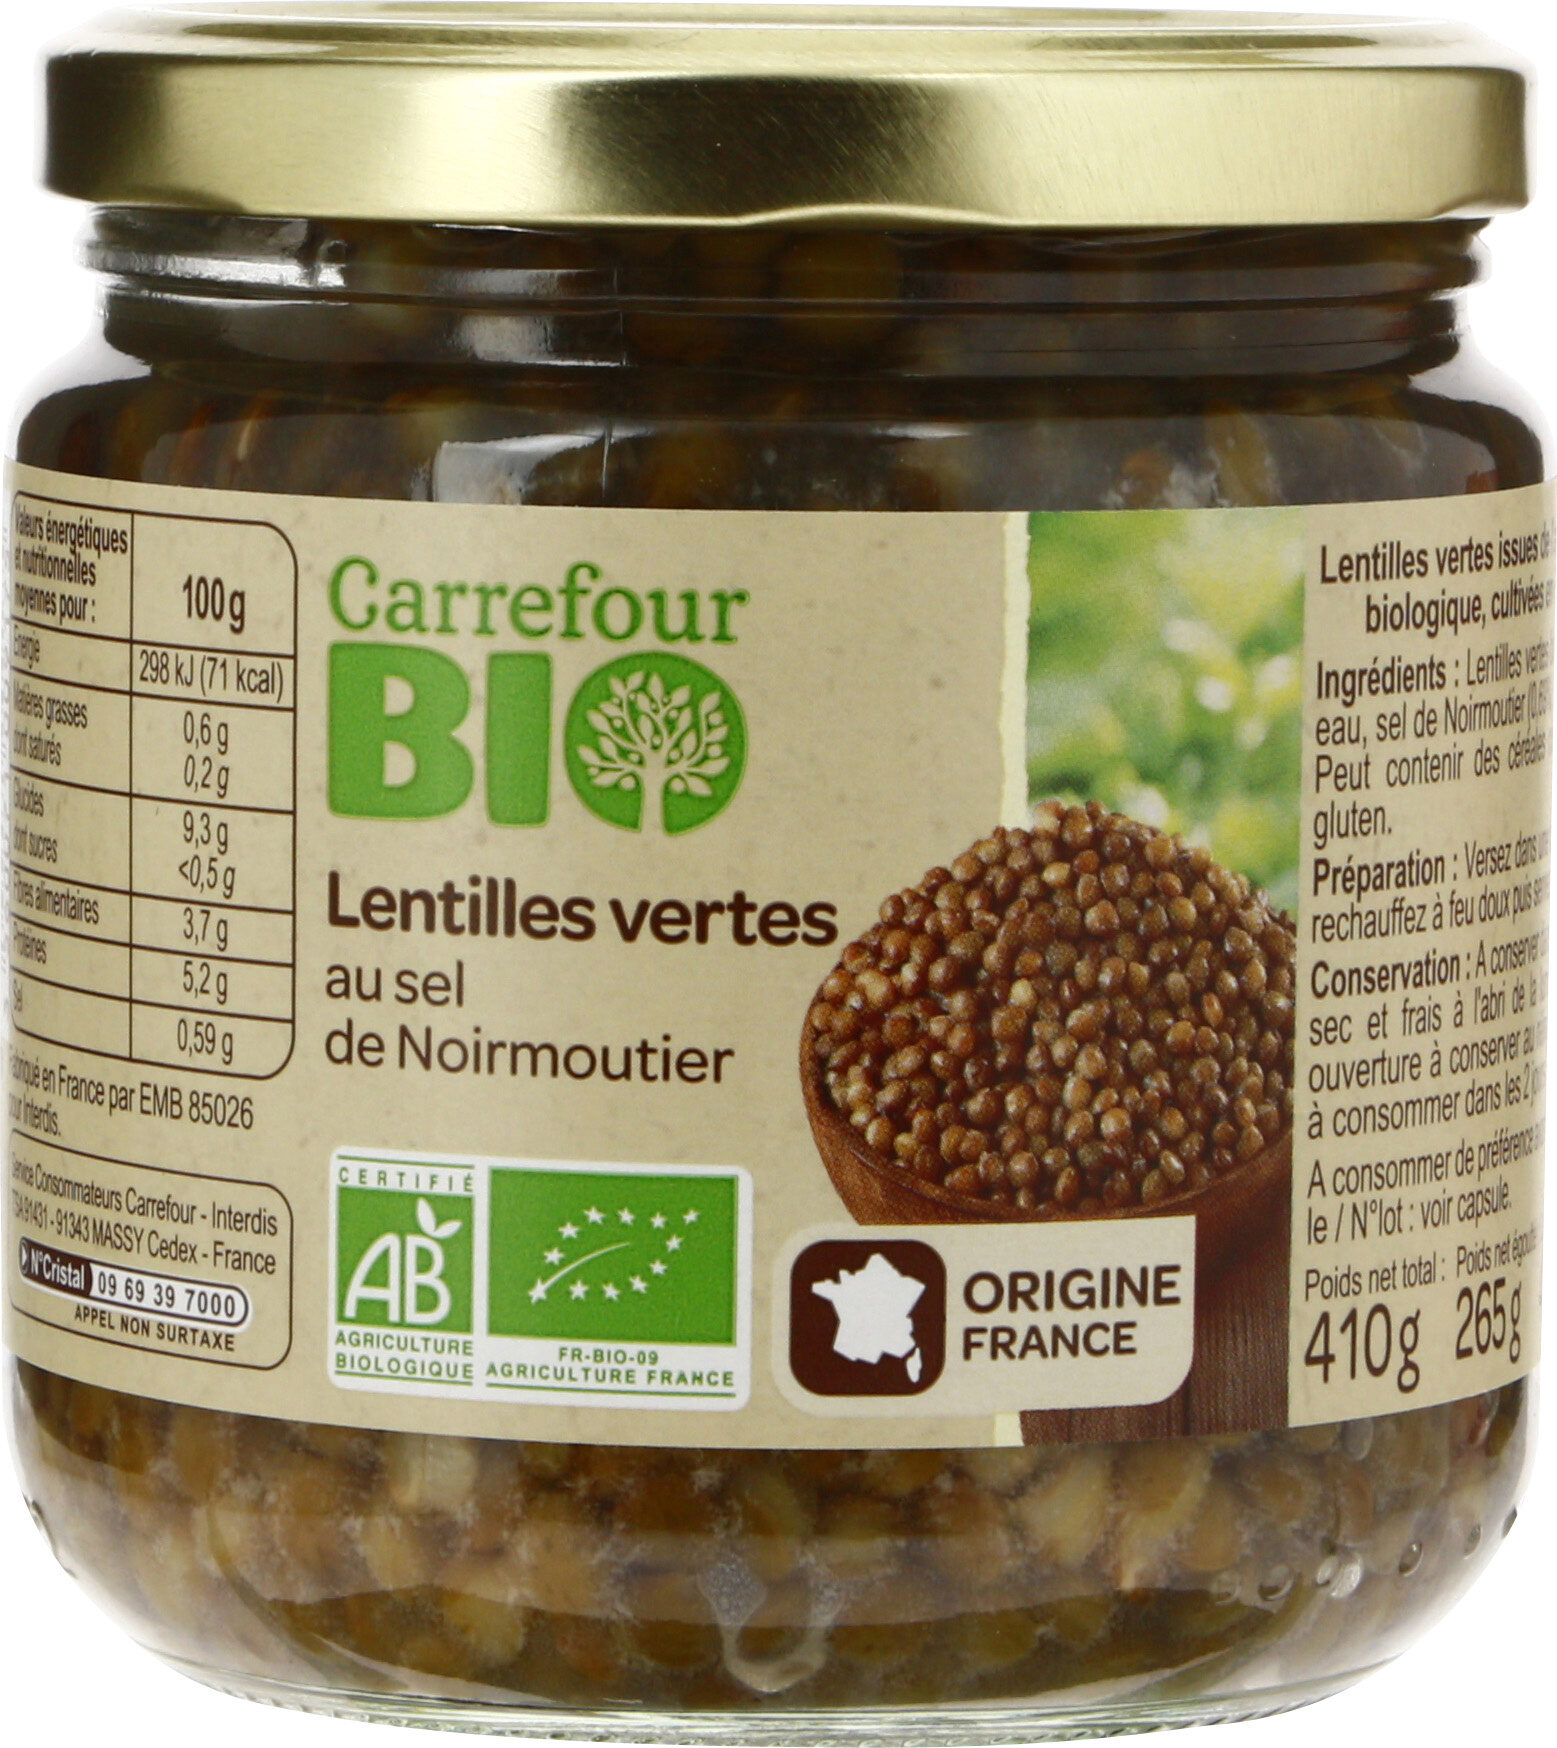 Lentilles vertes au sel de Noirmoutier - Product - fr